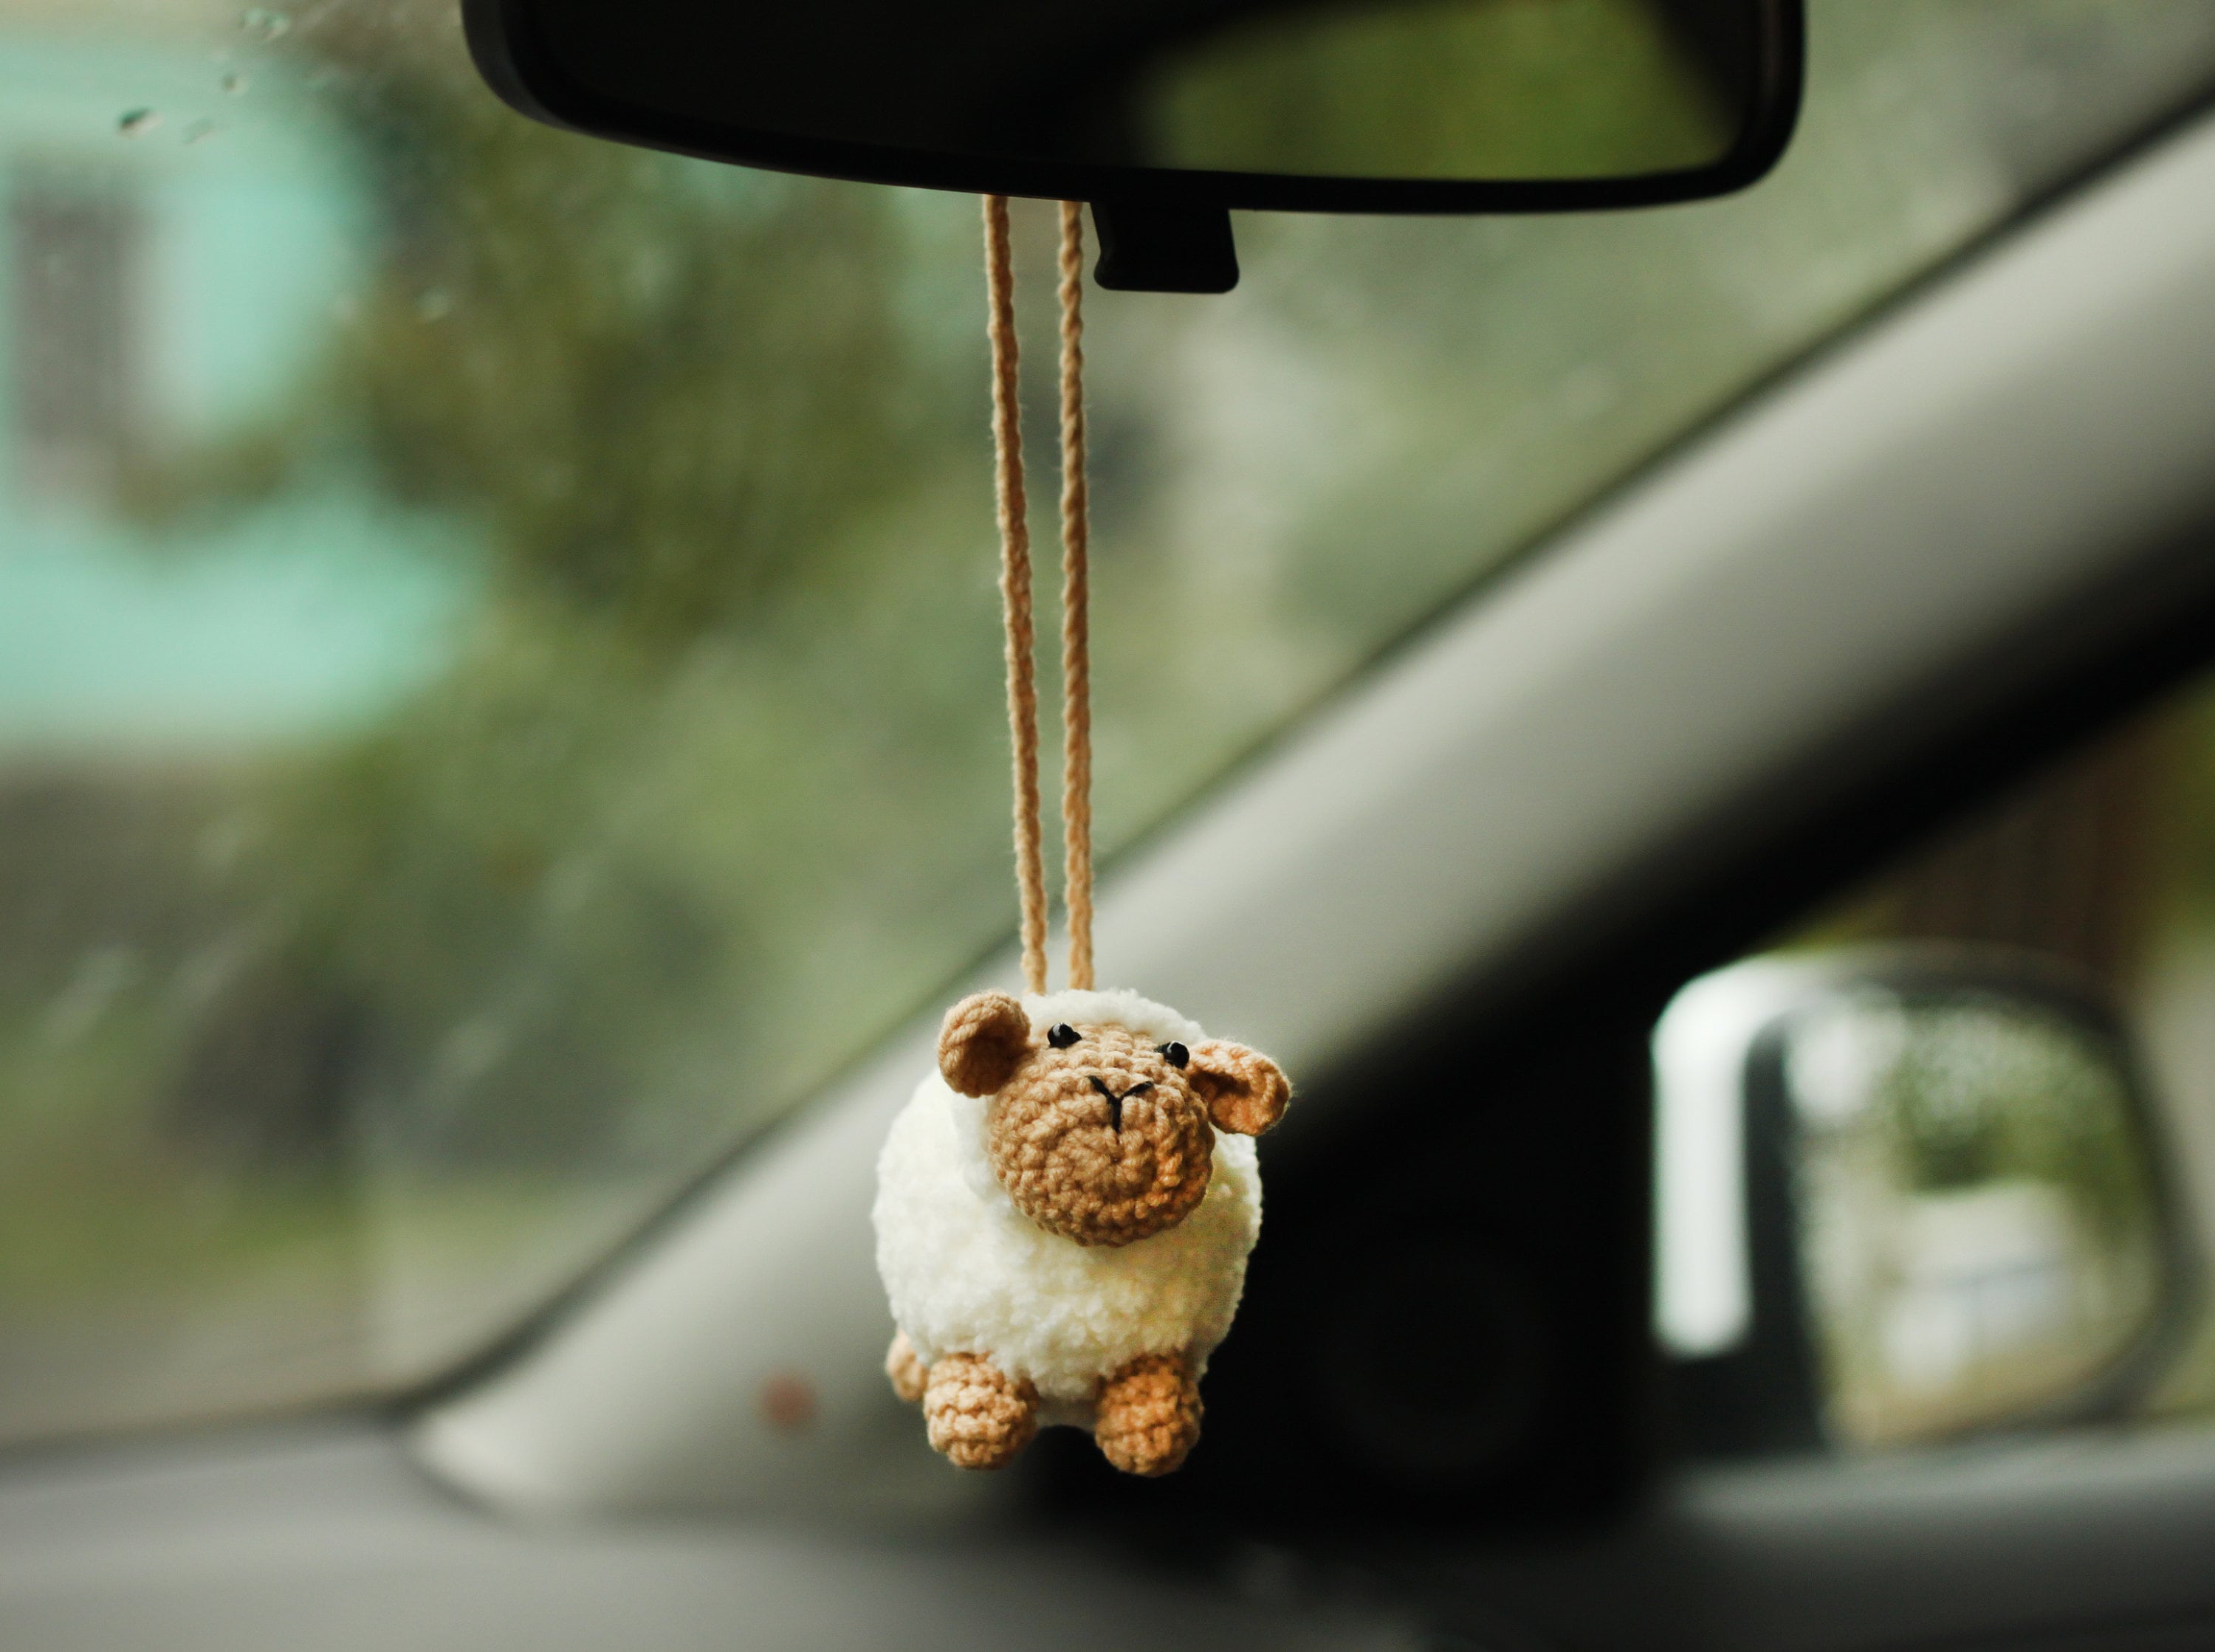 Rear View Mirror Accessories for Boyfriend Sheep Car Charm Cute